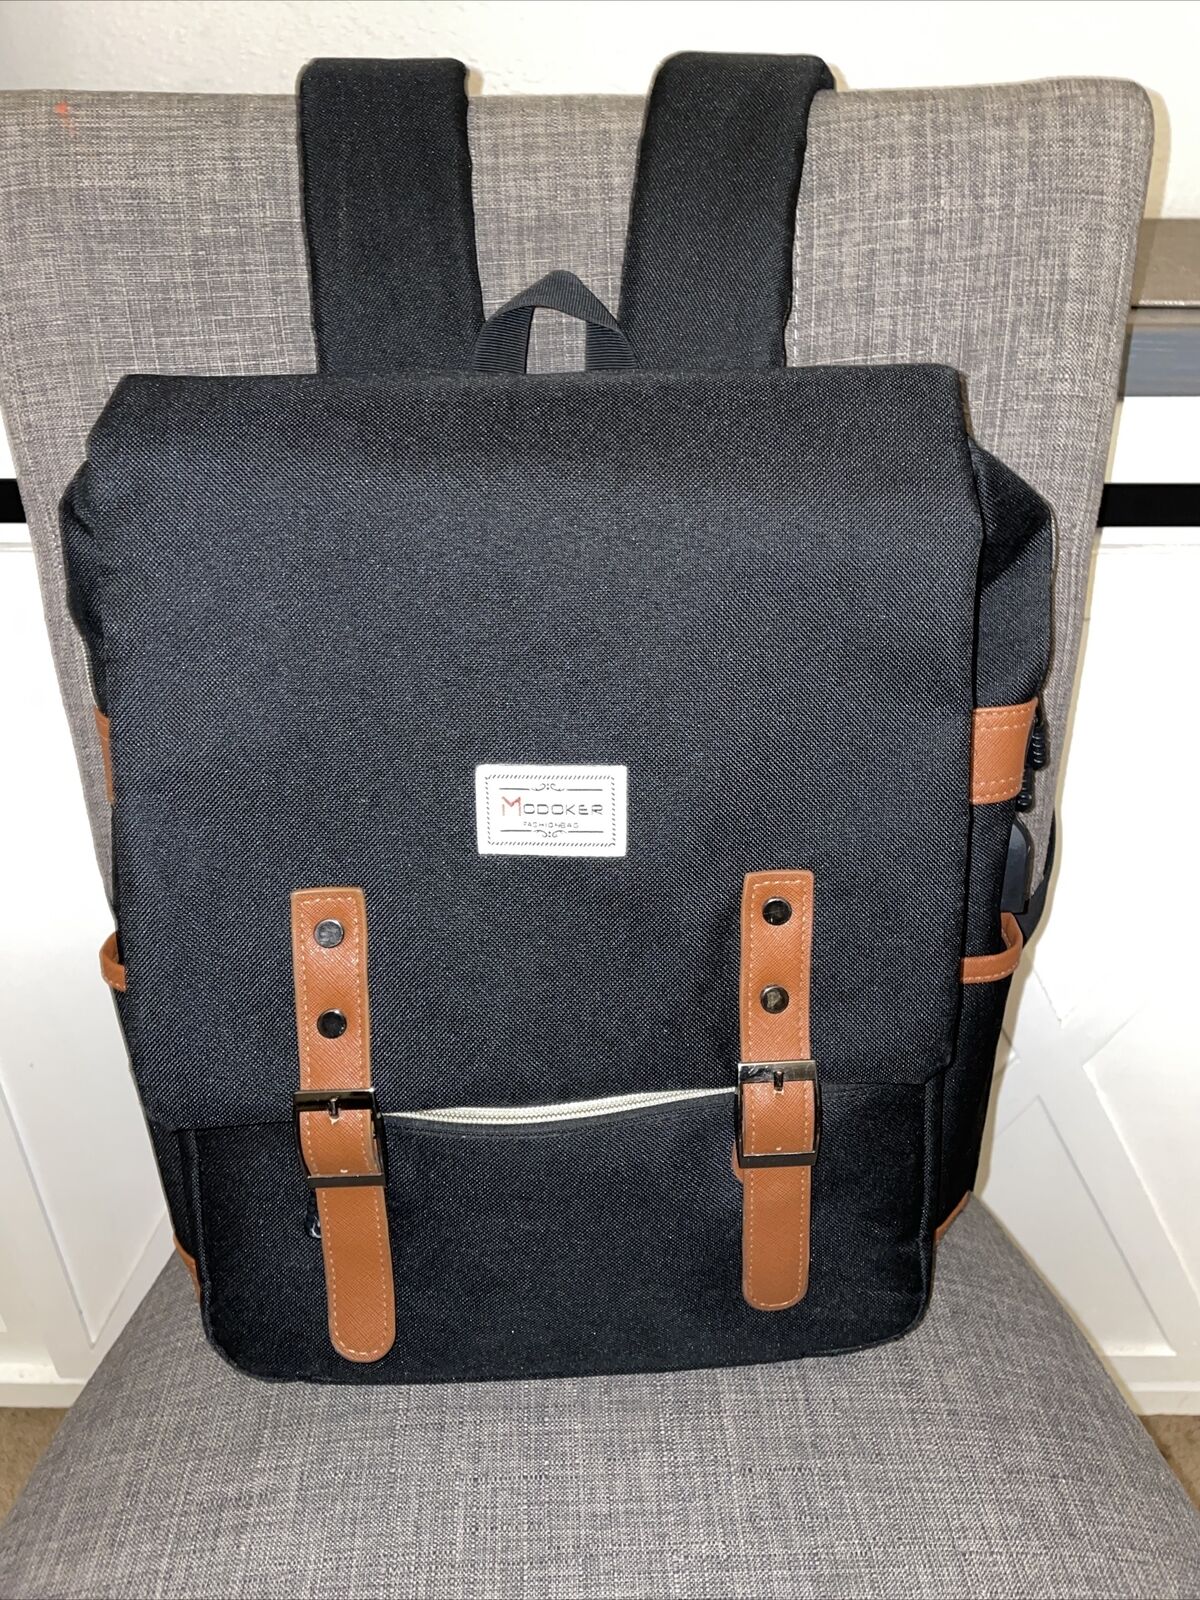 Modoker Vintage look Laptop Backpack Fashion Bag Black